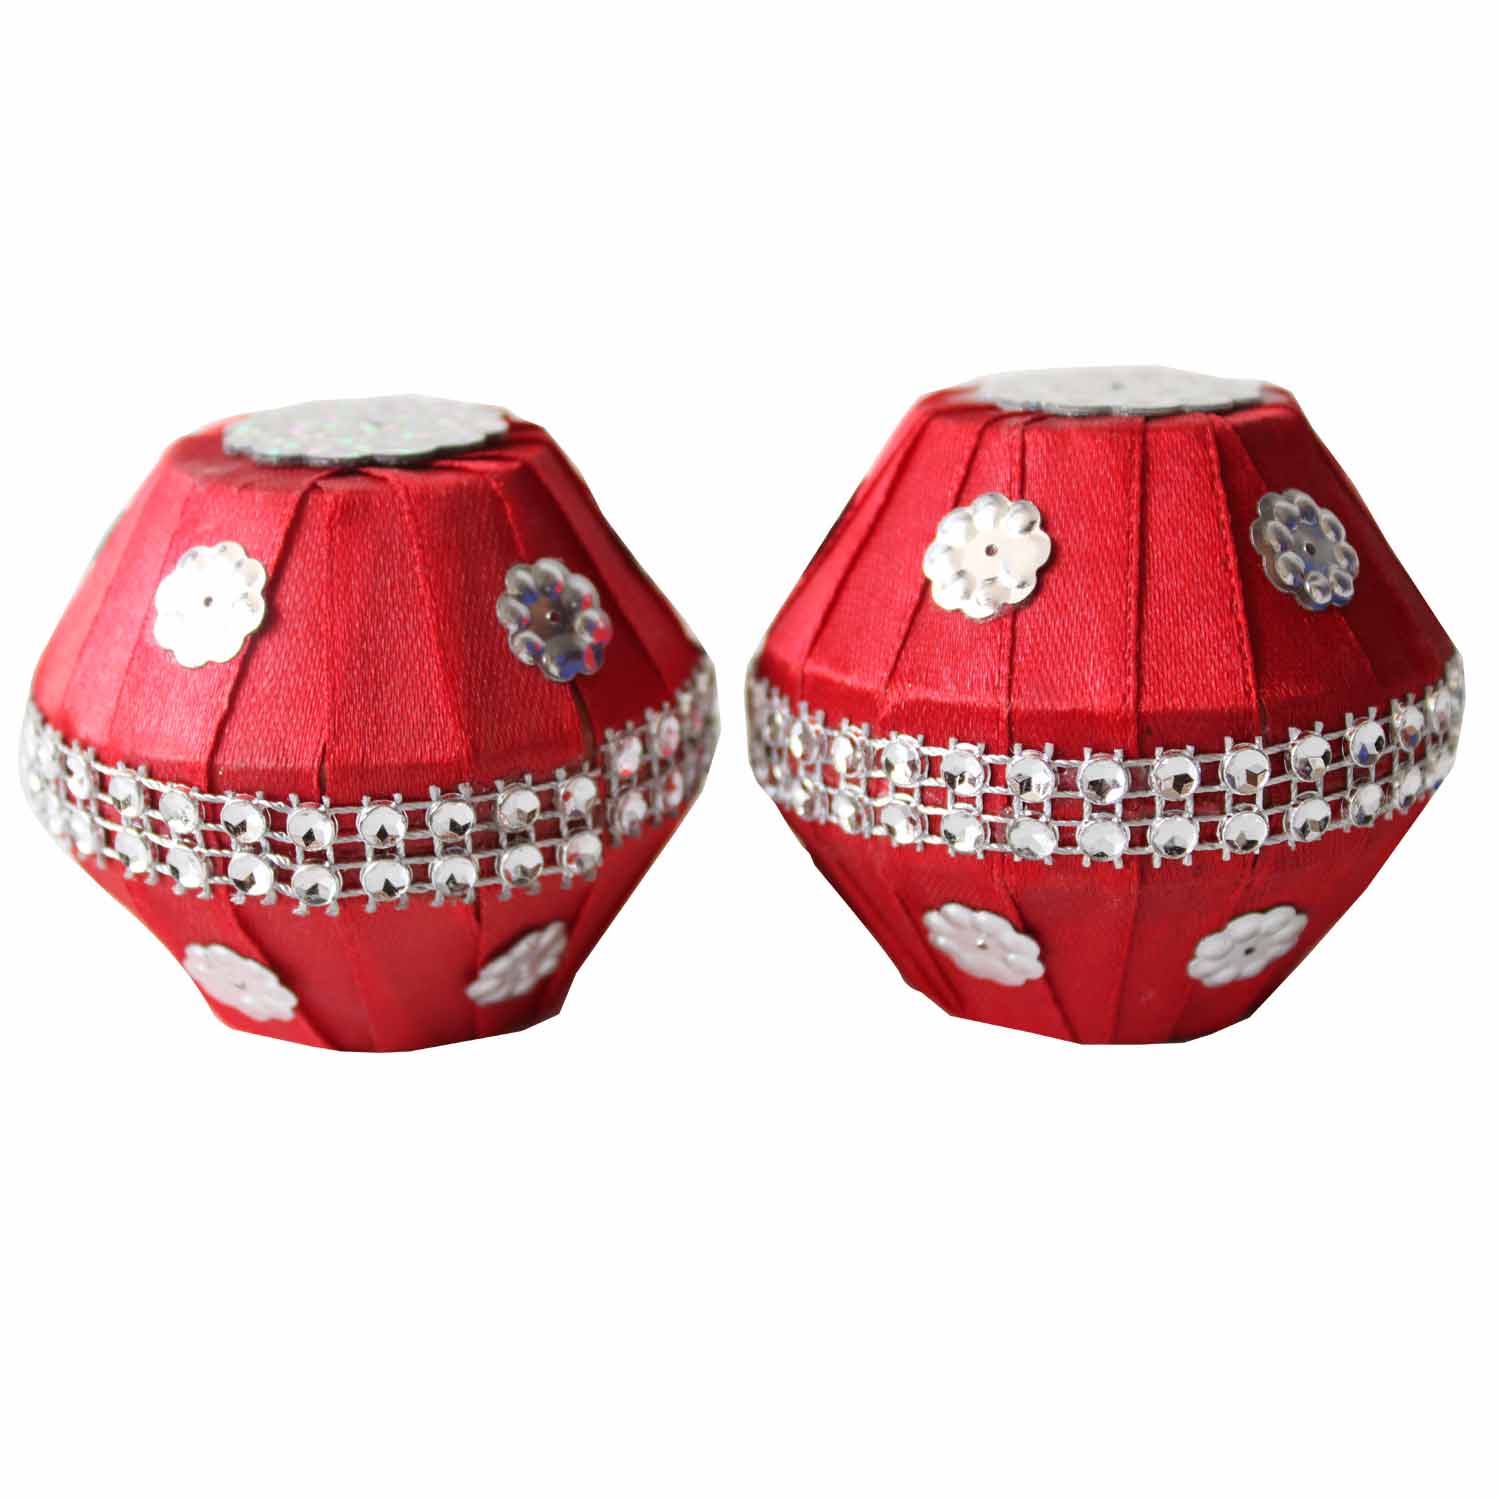 Samput - Red Clay, Hindu Wedding Ritual item (2 pieces)